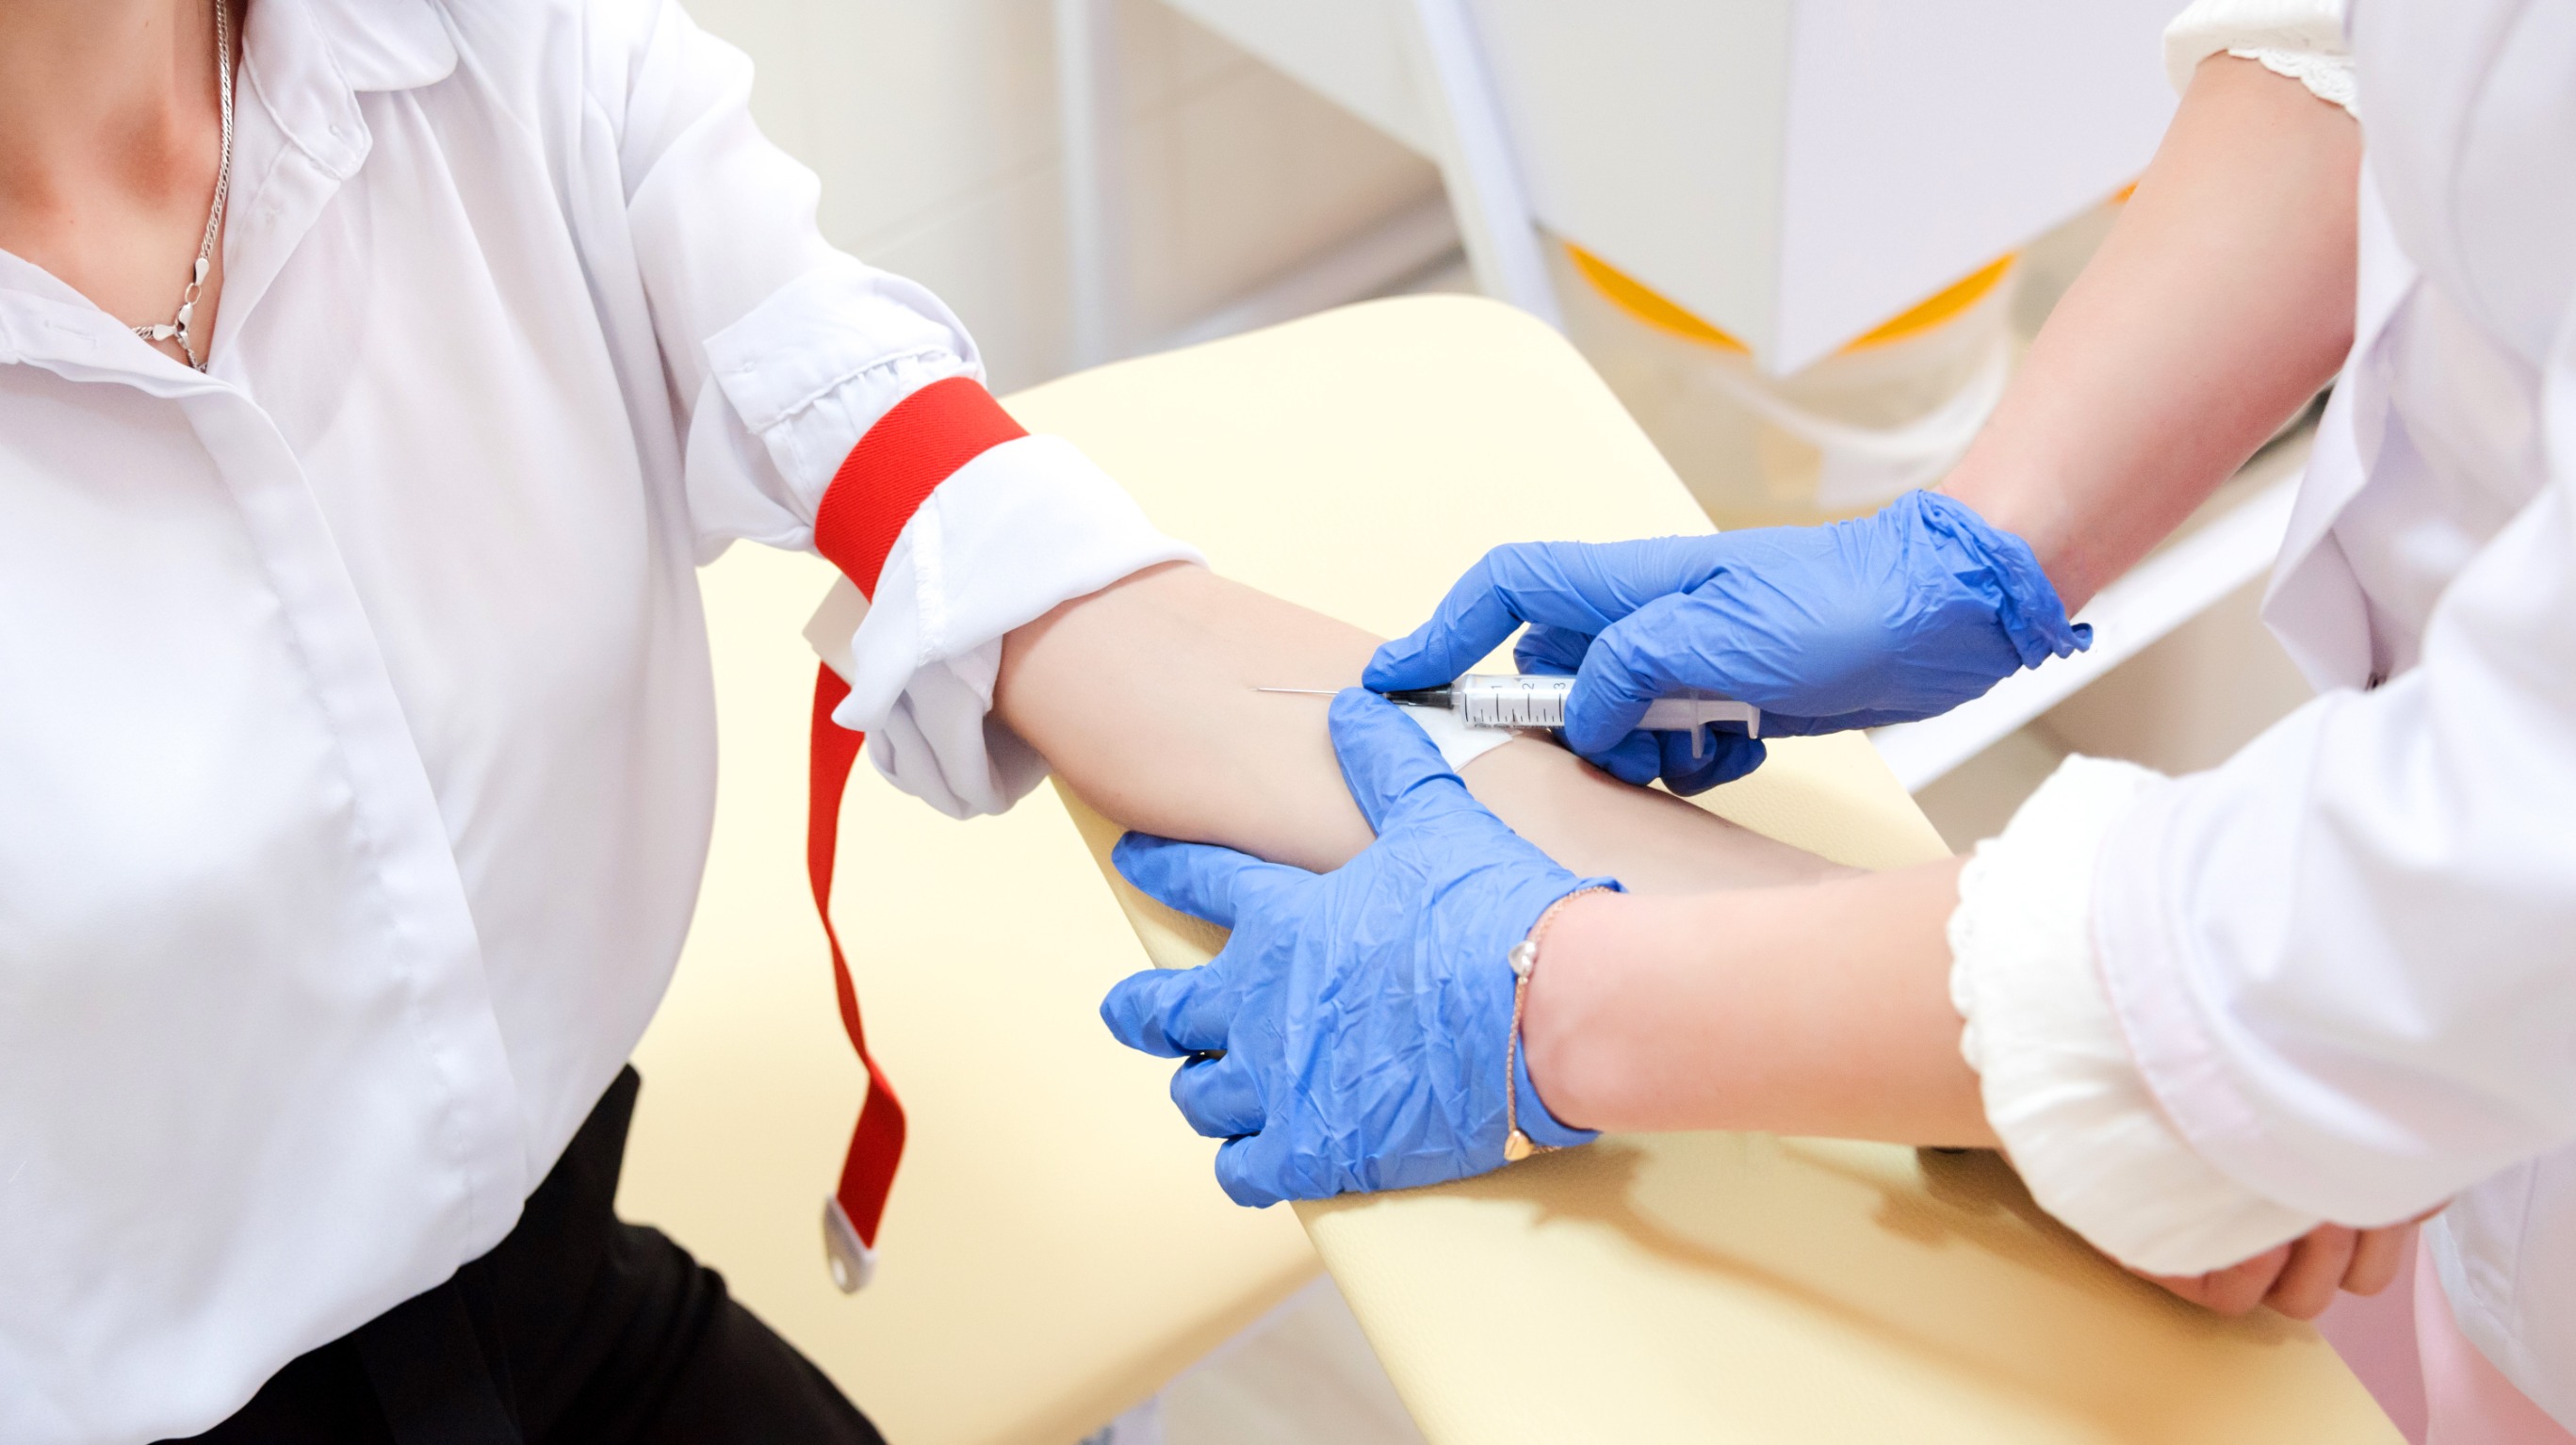 Pielęgniarka pobiera pacjentce krew z żyły u ręki, aby następnie przekazać próbkę do analizy laboratoryjnej. /Źródło: 123rf.com